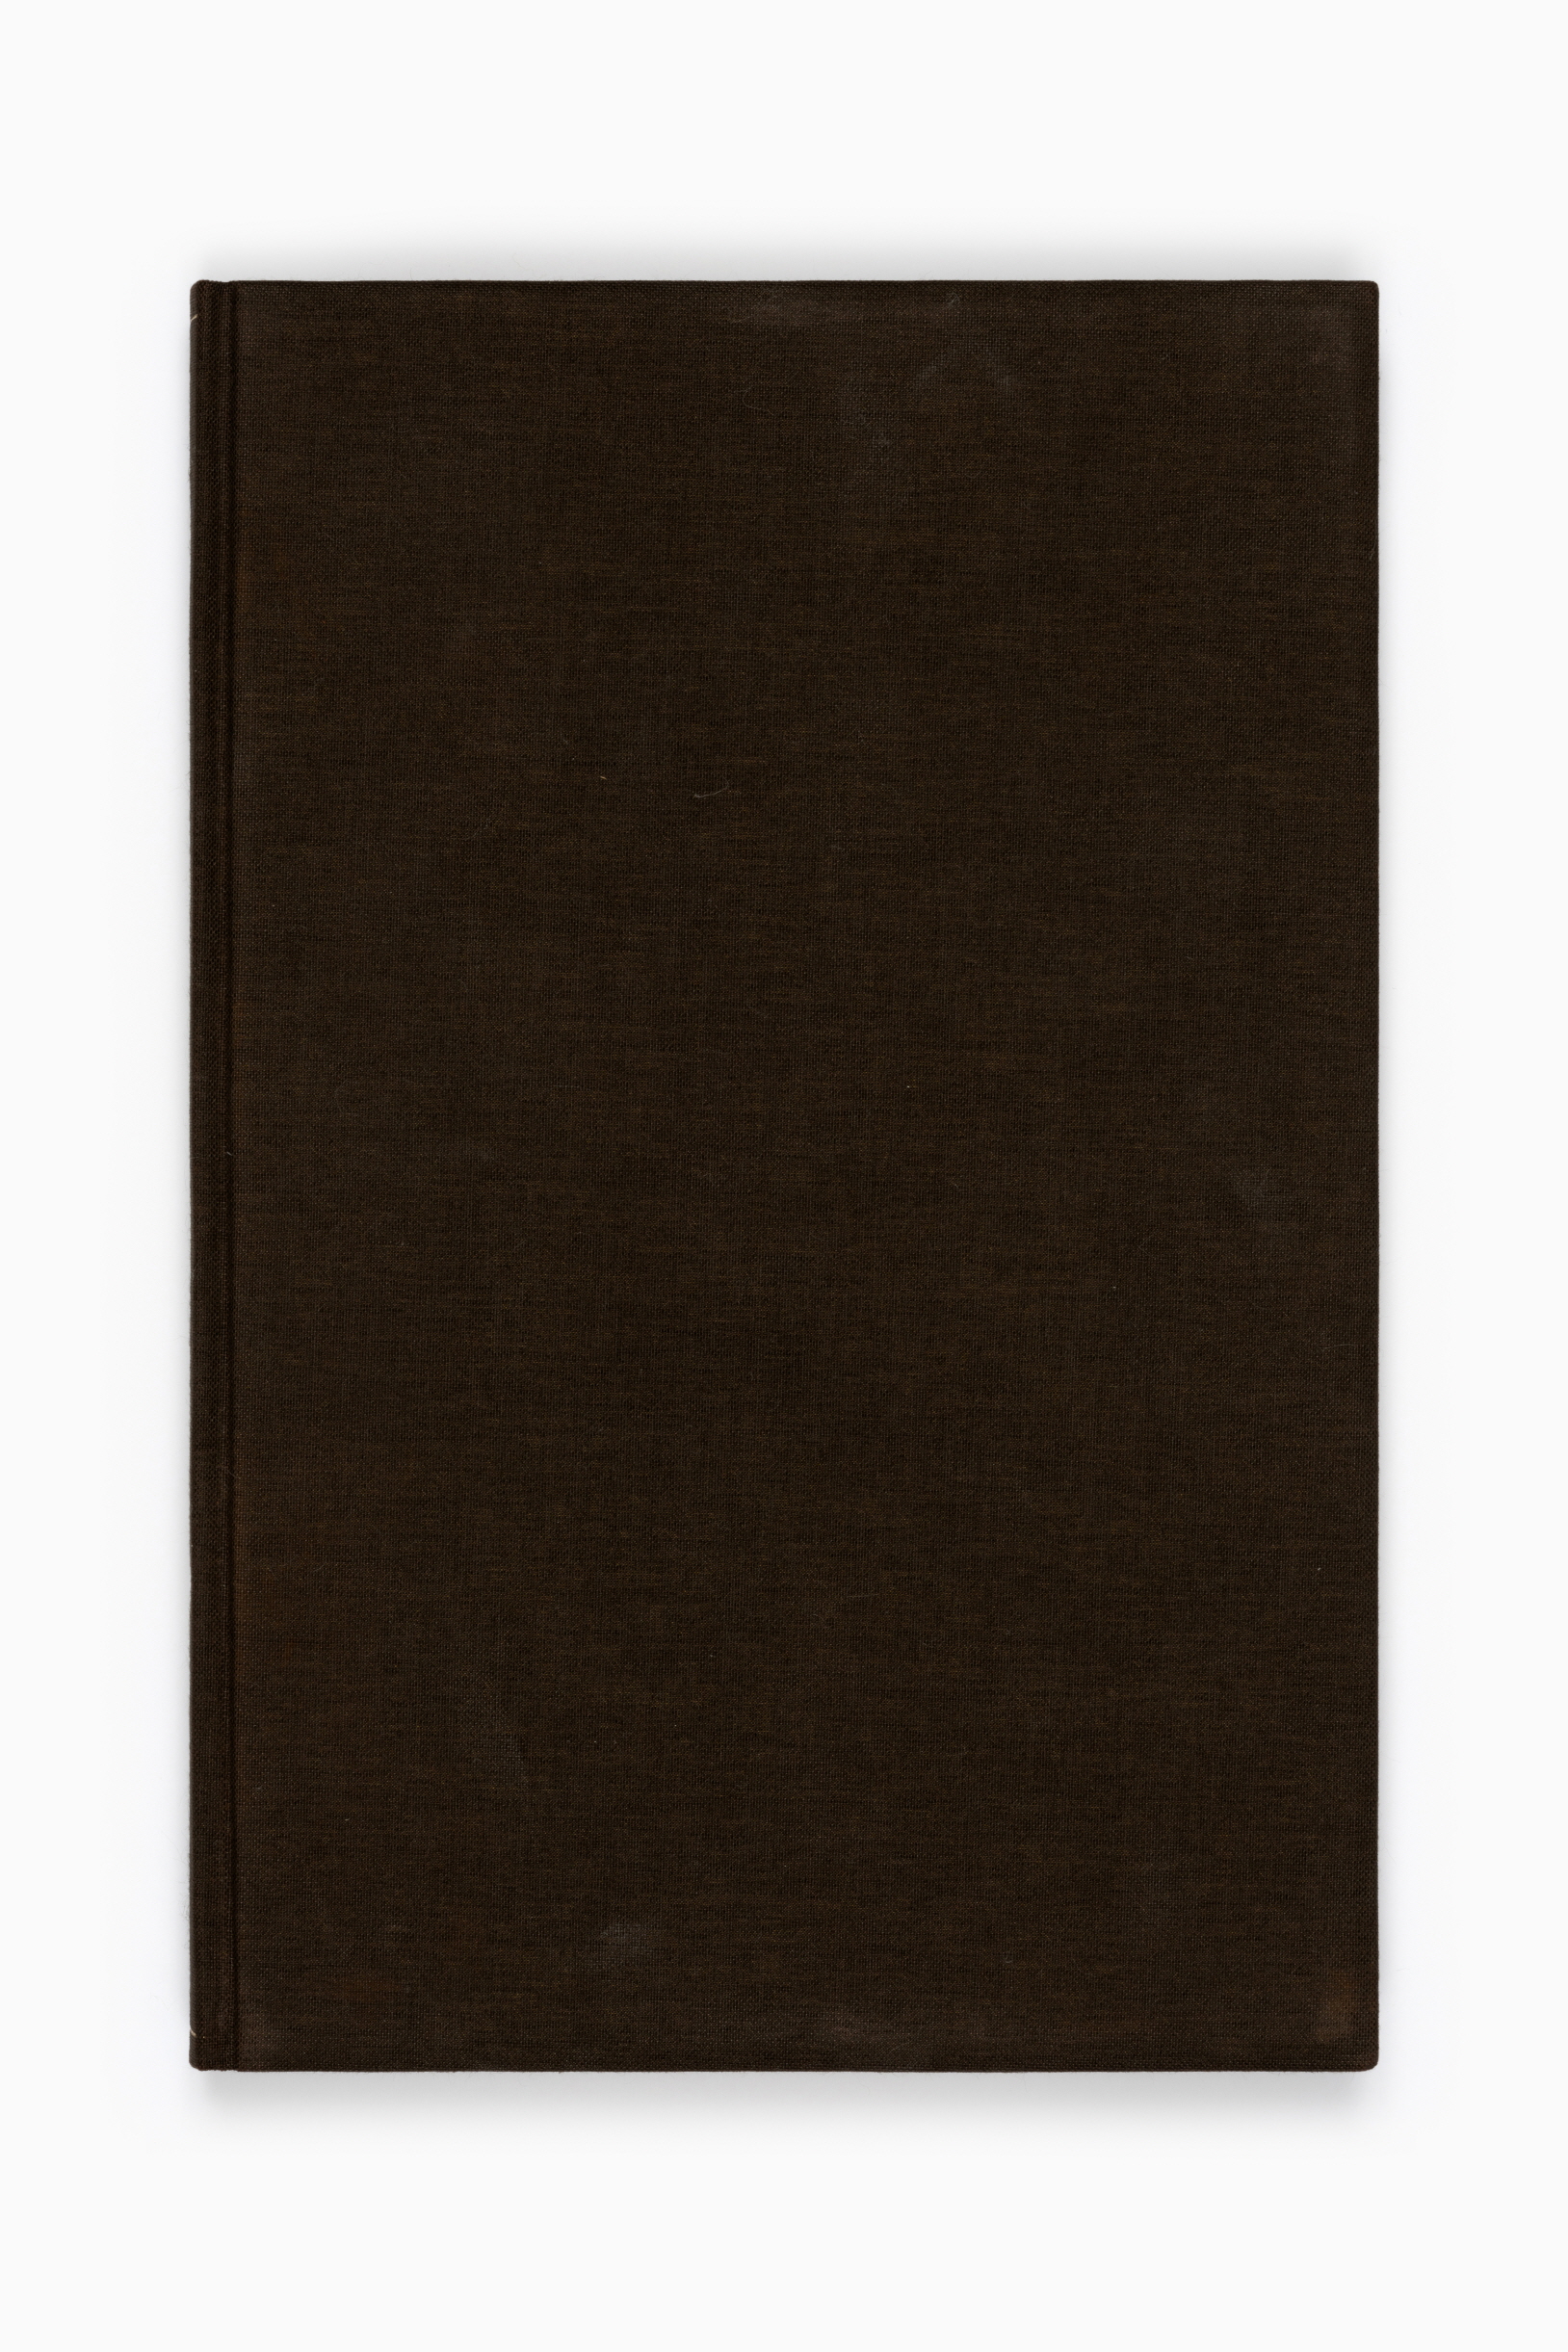 한어문전(초판본, 1881)1